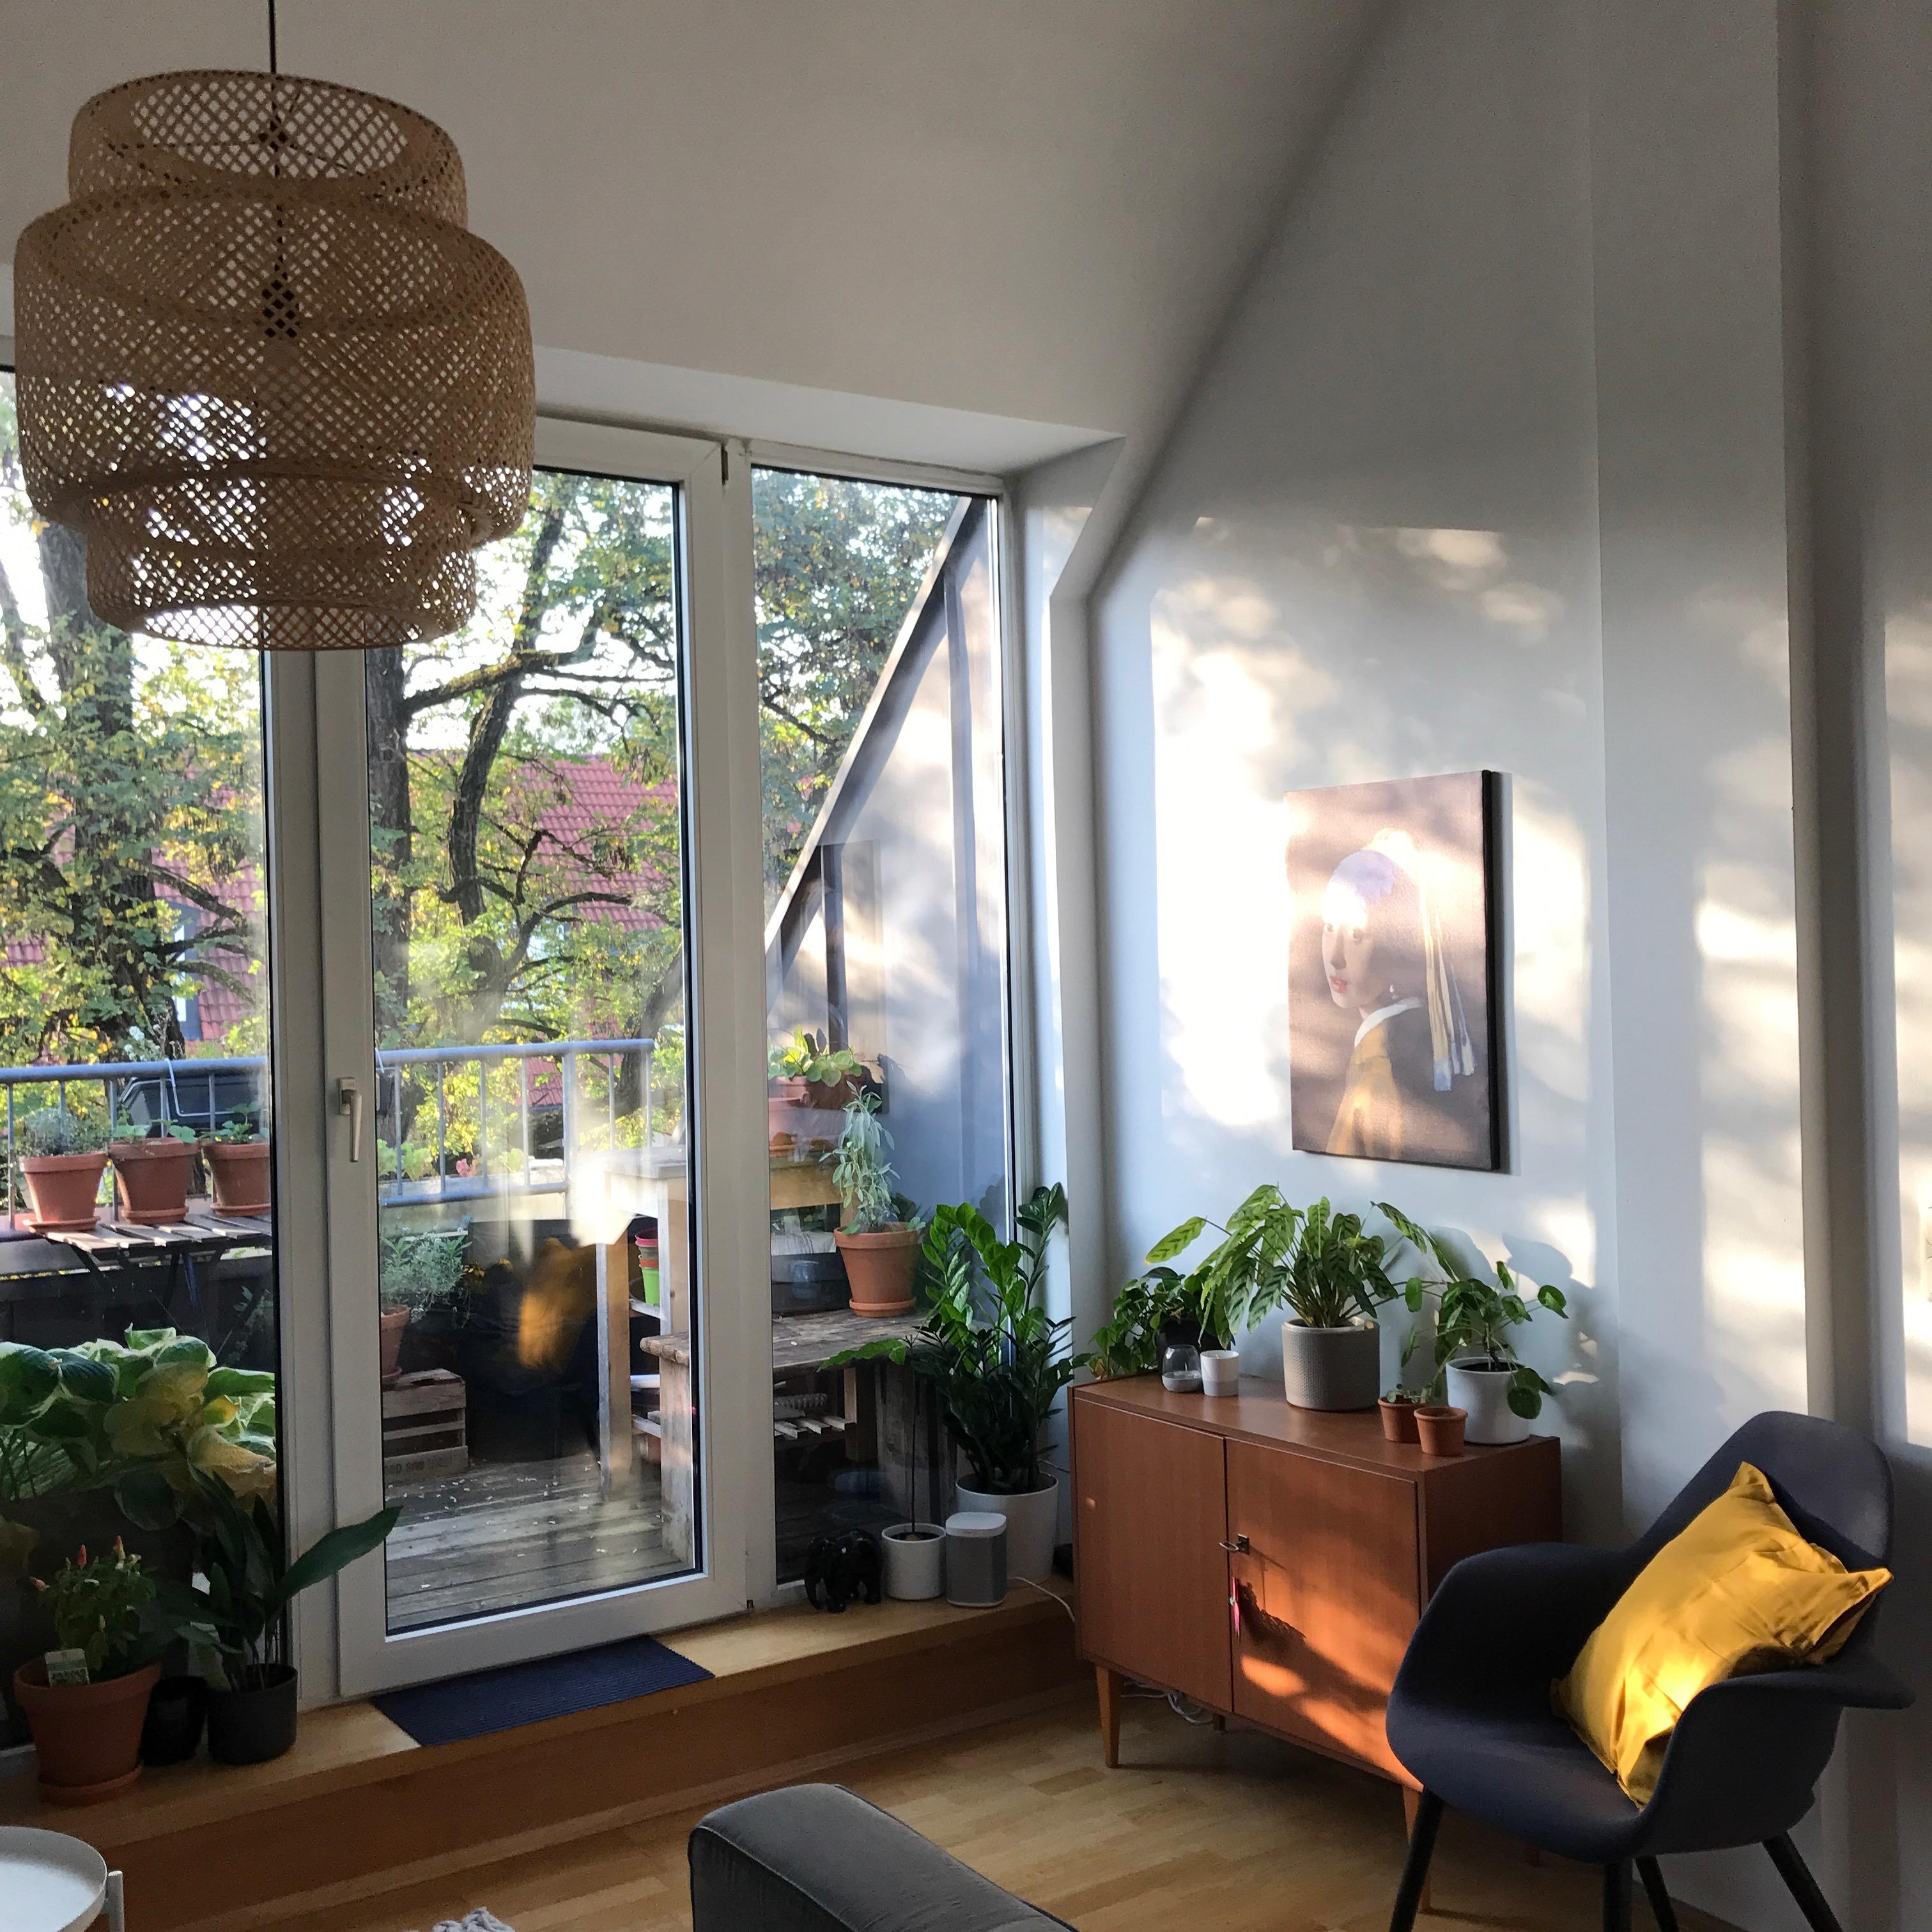 Nachmittagssonne im Wohnzimmer und Blick auf den Balkon #wohnzimmer #balkonliebe #pflanzenliebe